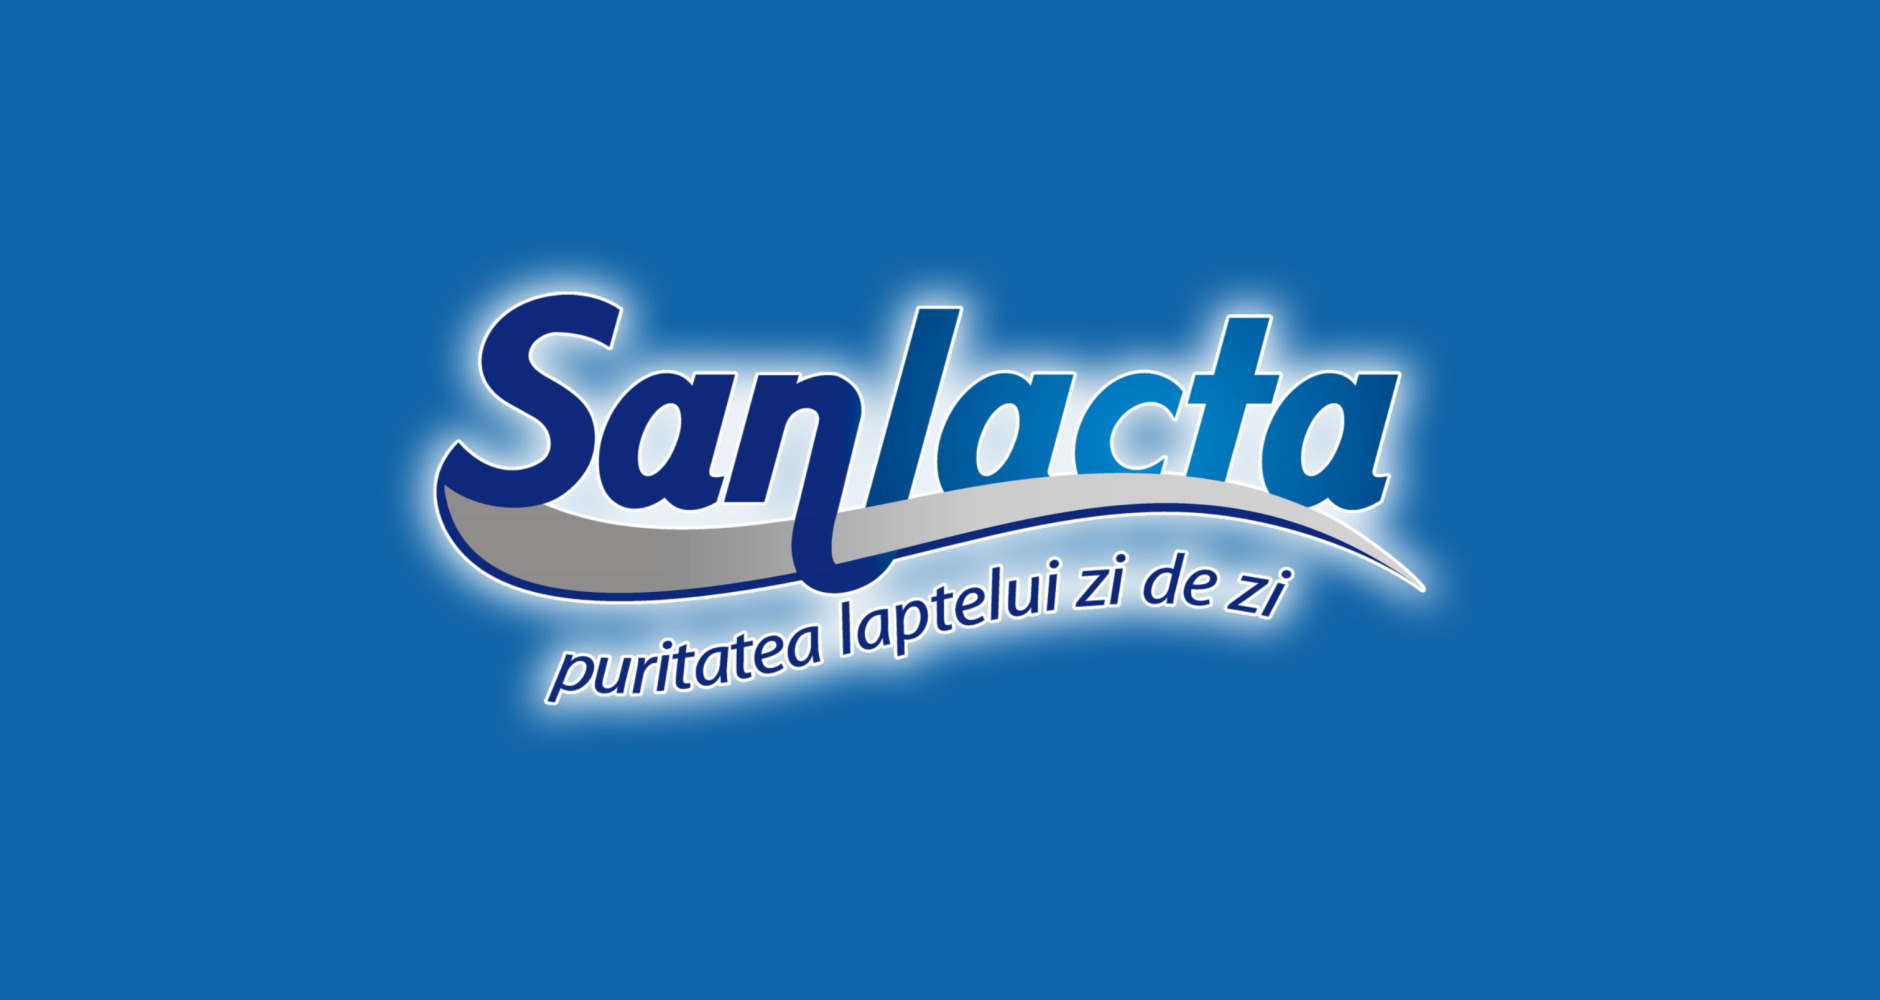 SAN de la Sanlacta